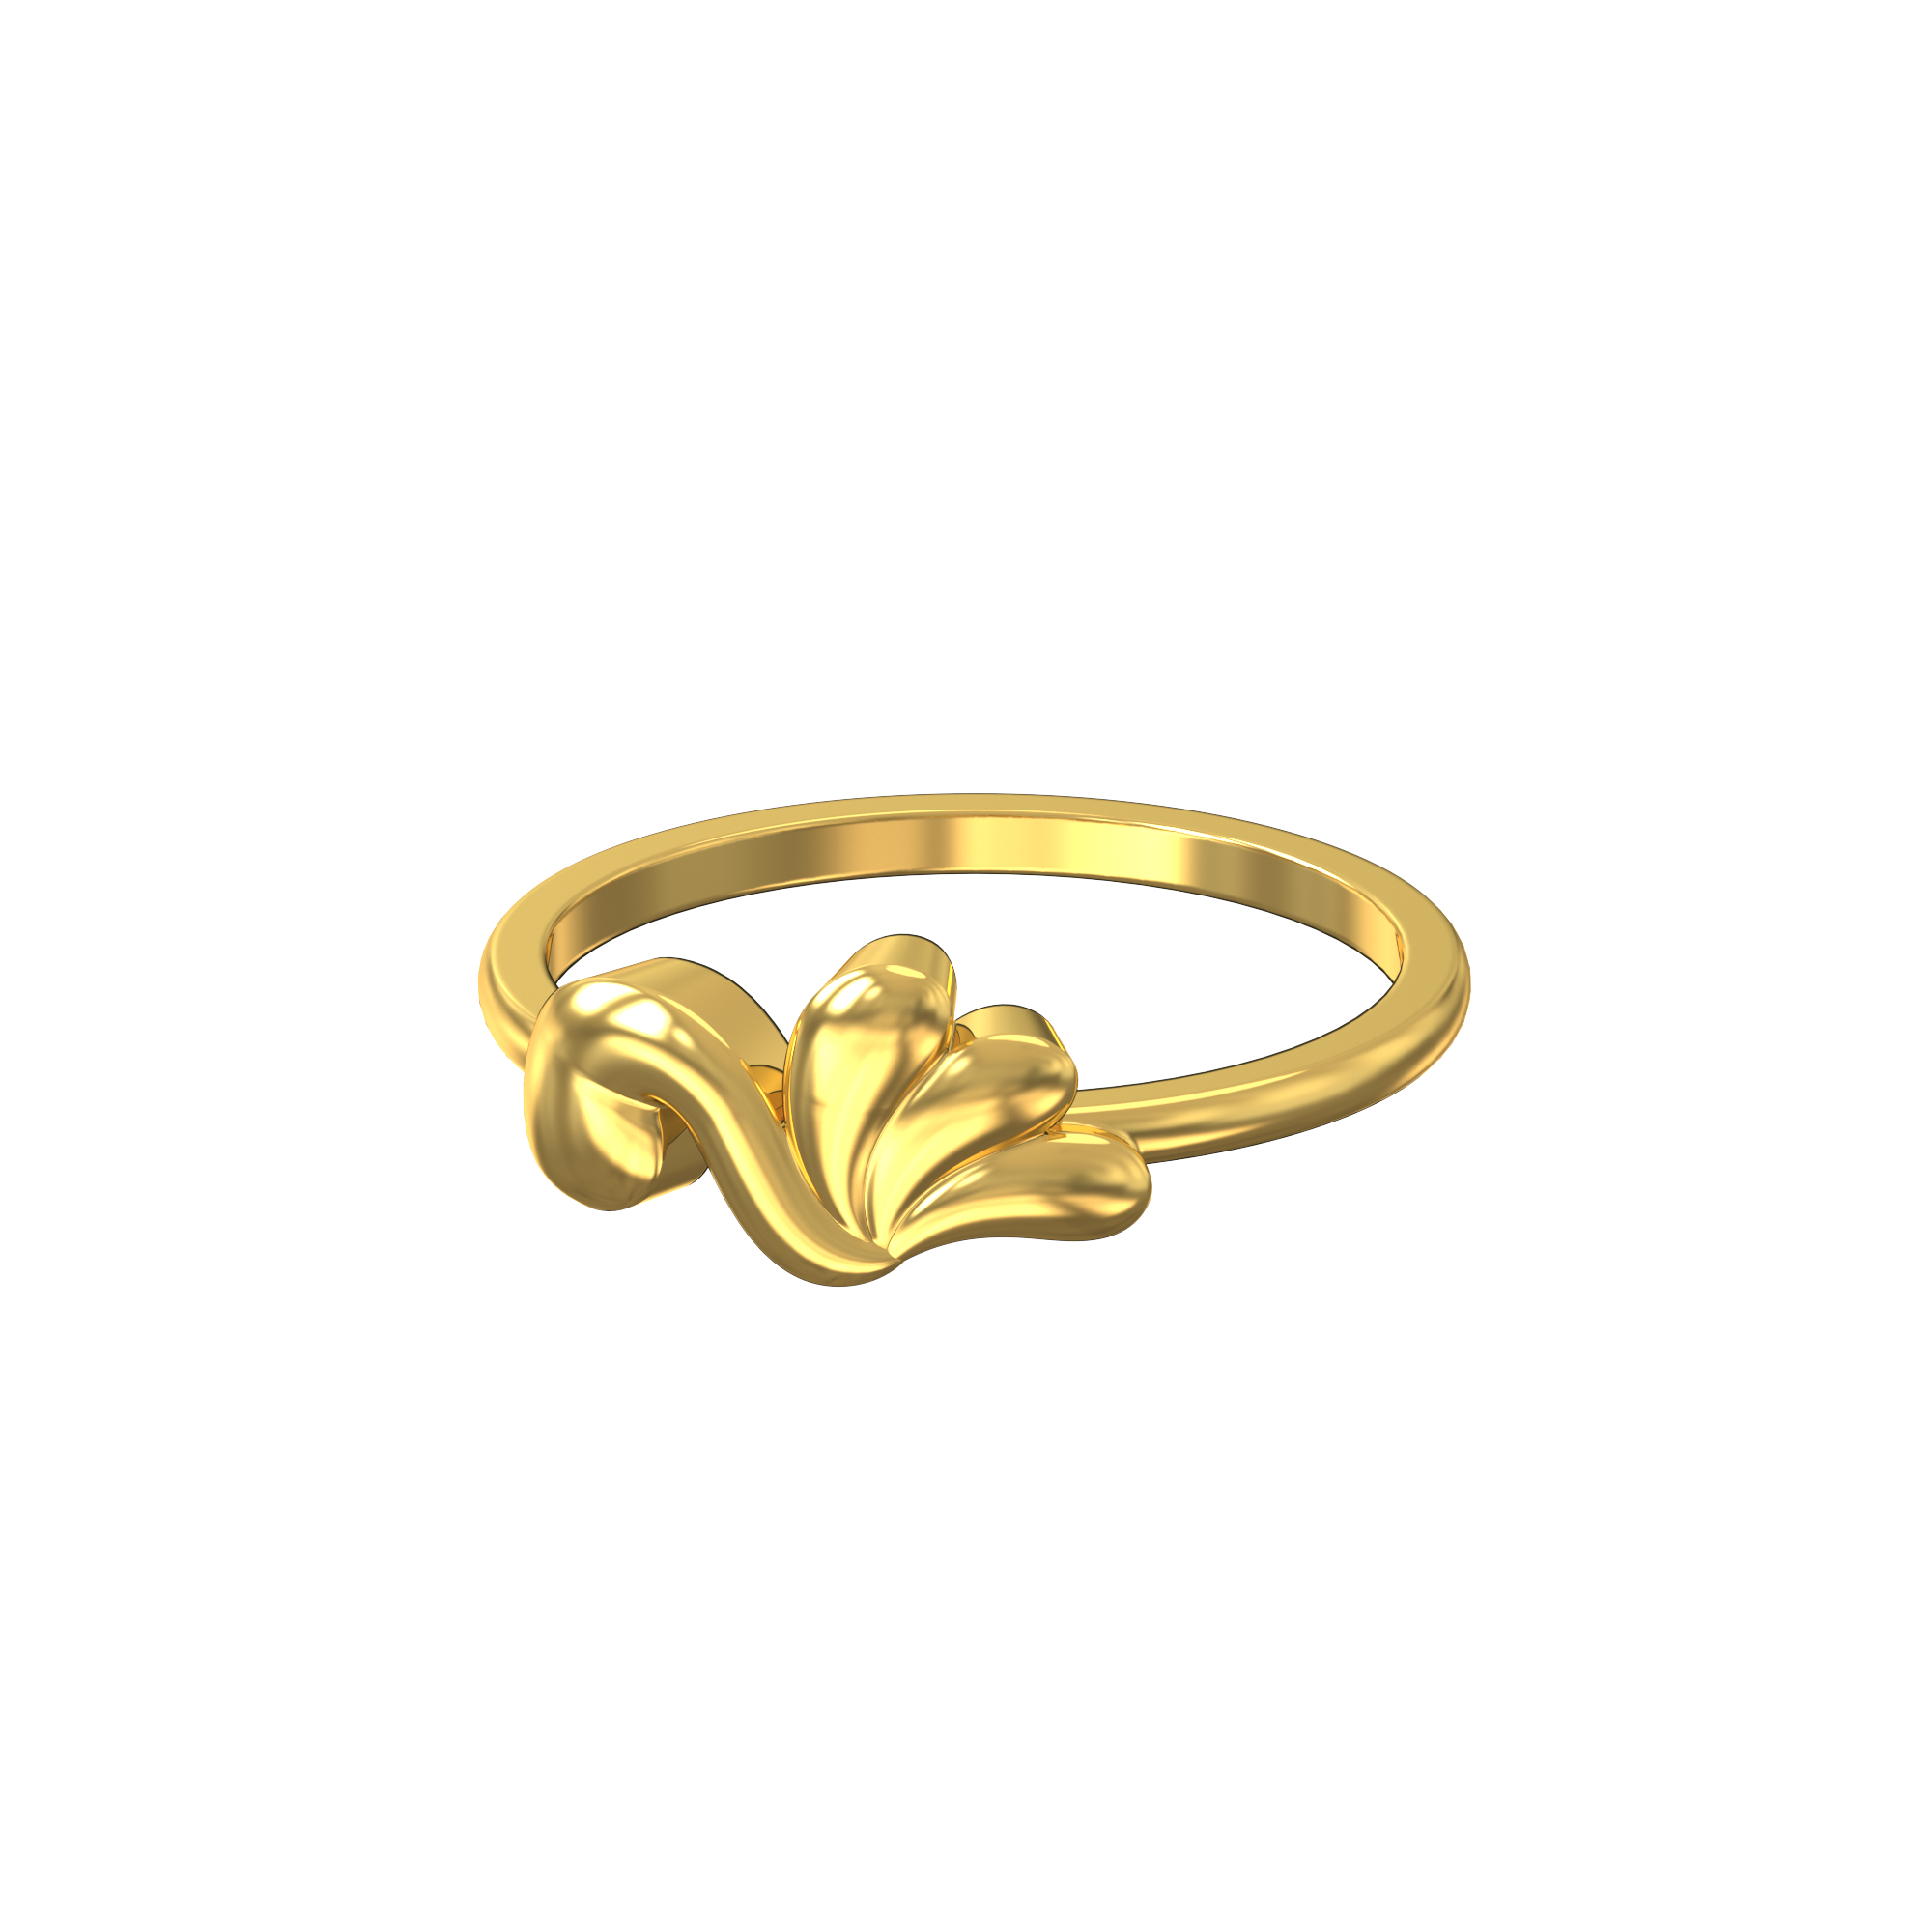 Grand Citrine Ring in 14k Gold (November)